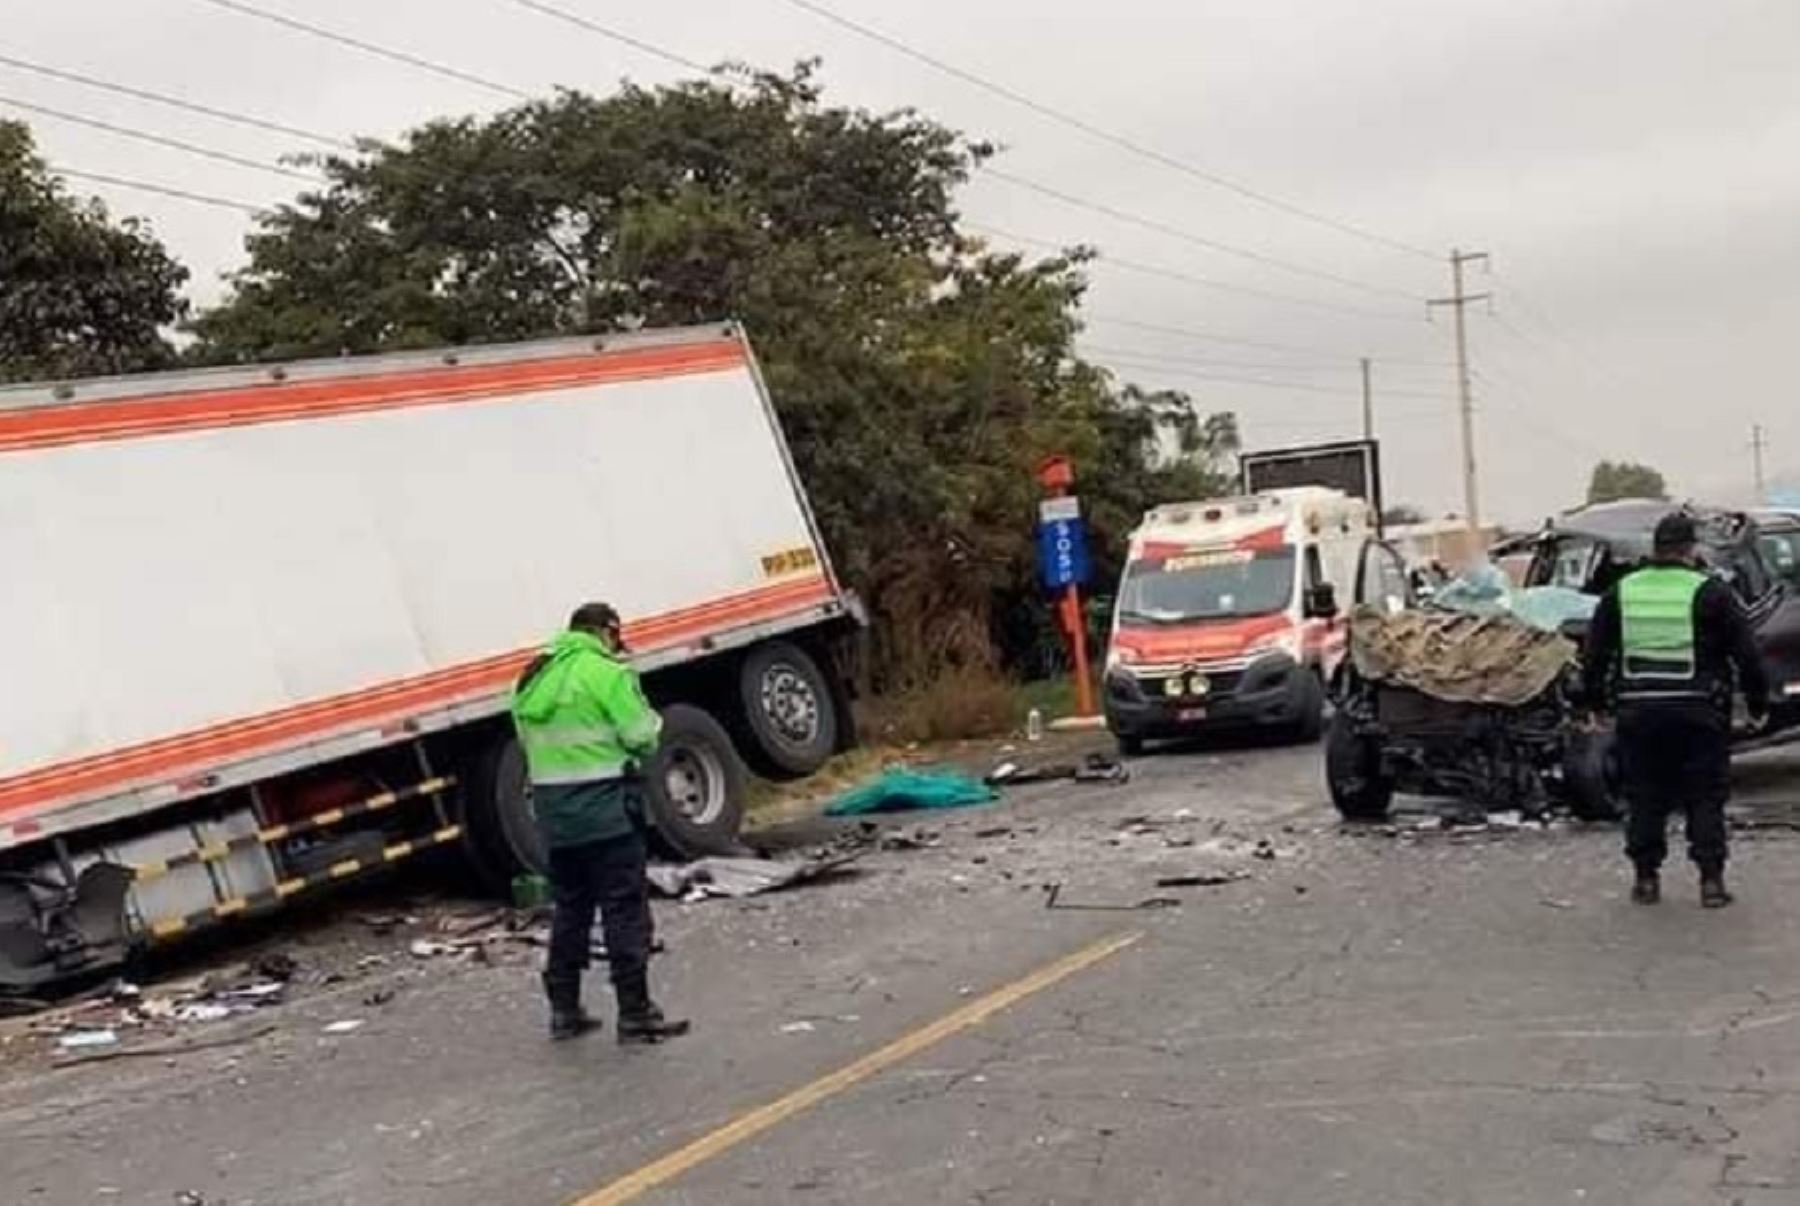 Una persona murió y otras cinco resultaron heridas producto de un violento accidente vehicular ocurrido hoy en la Panamericana Norte, a la altura del sector La Huaca, en el distrito de Comandante Noel, provincia de Casma, en el departamento de Áncash.